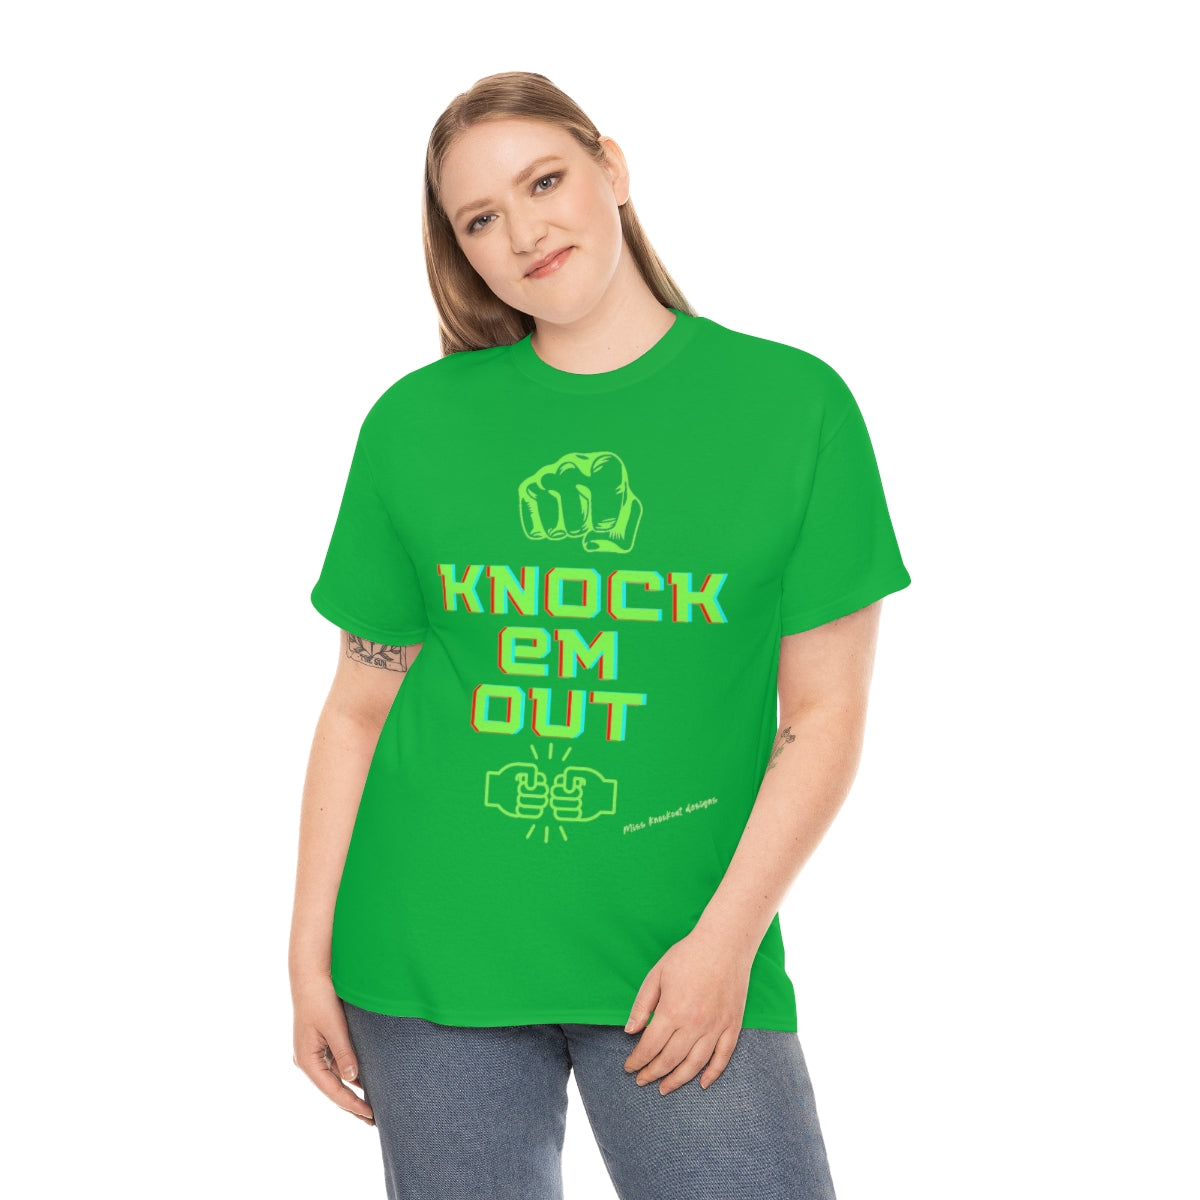 knock em out plain print Unisex Heavy Cotton Tee Miss knockout ™ Merchandise